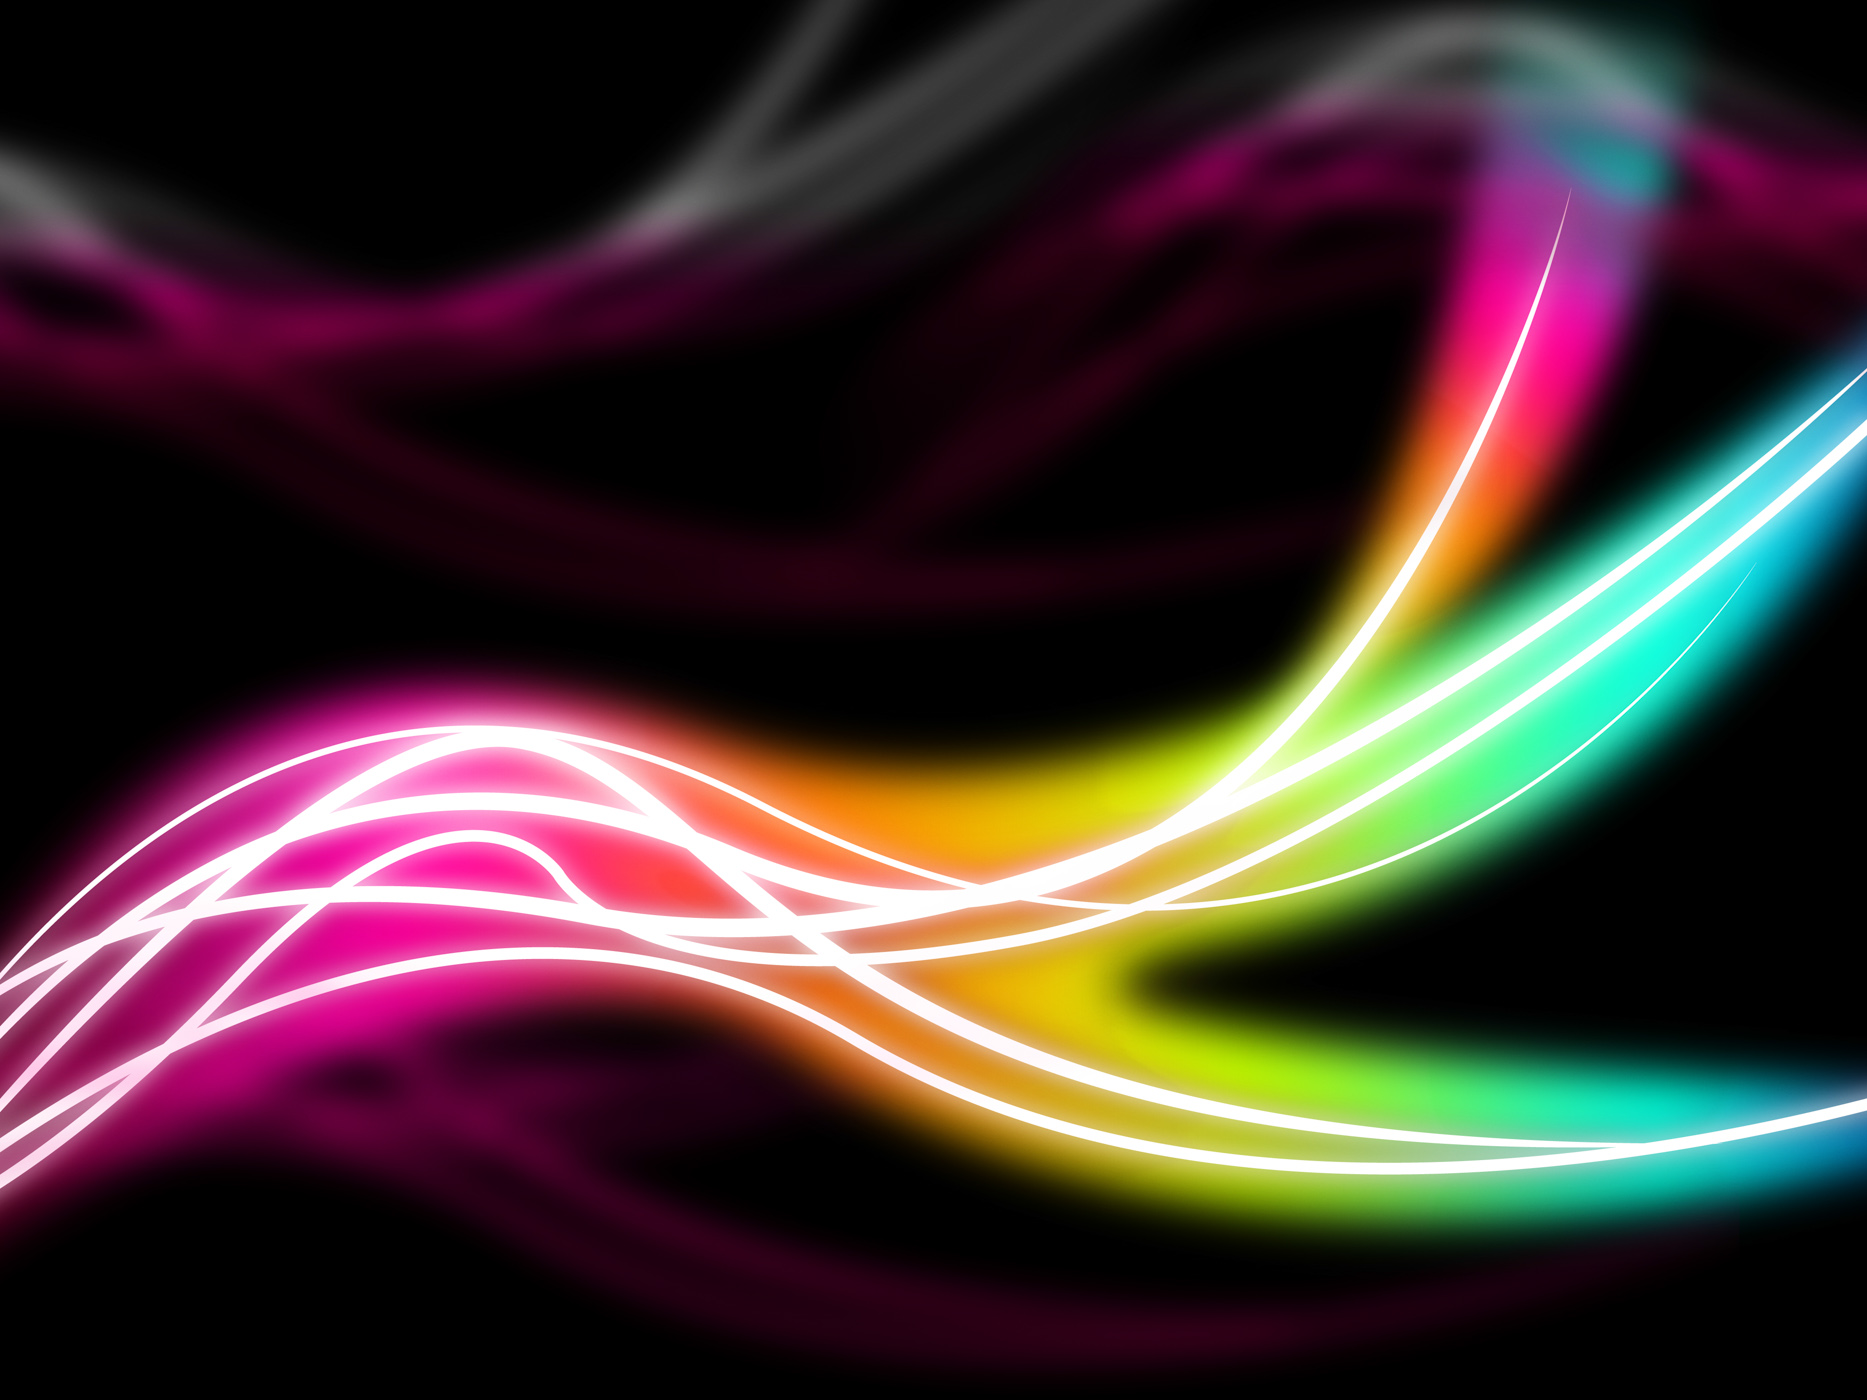 Flourescent swirls background means rainbow lines in darkness photo